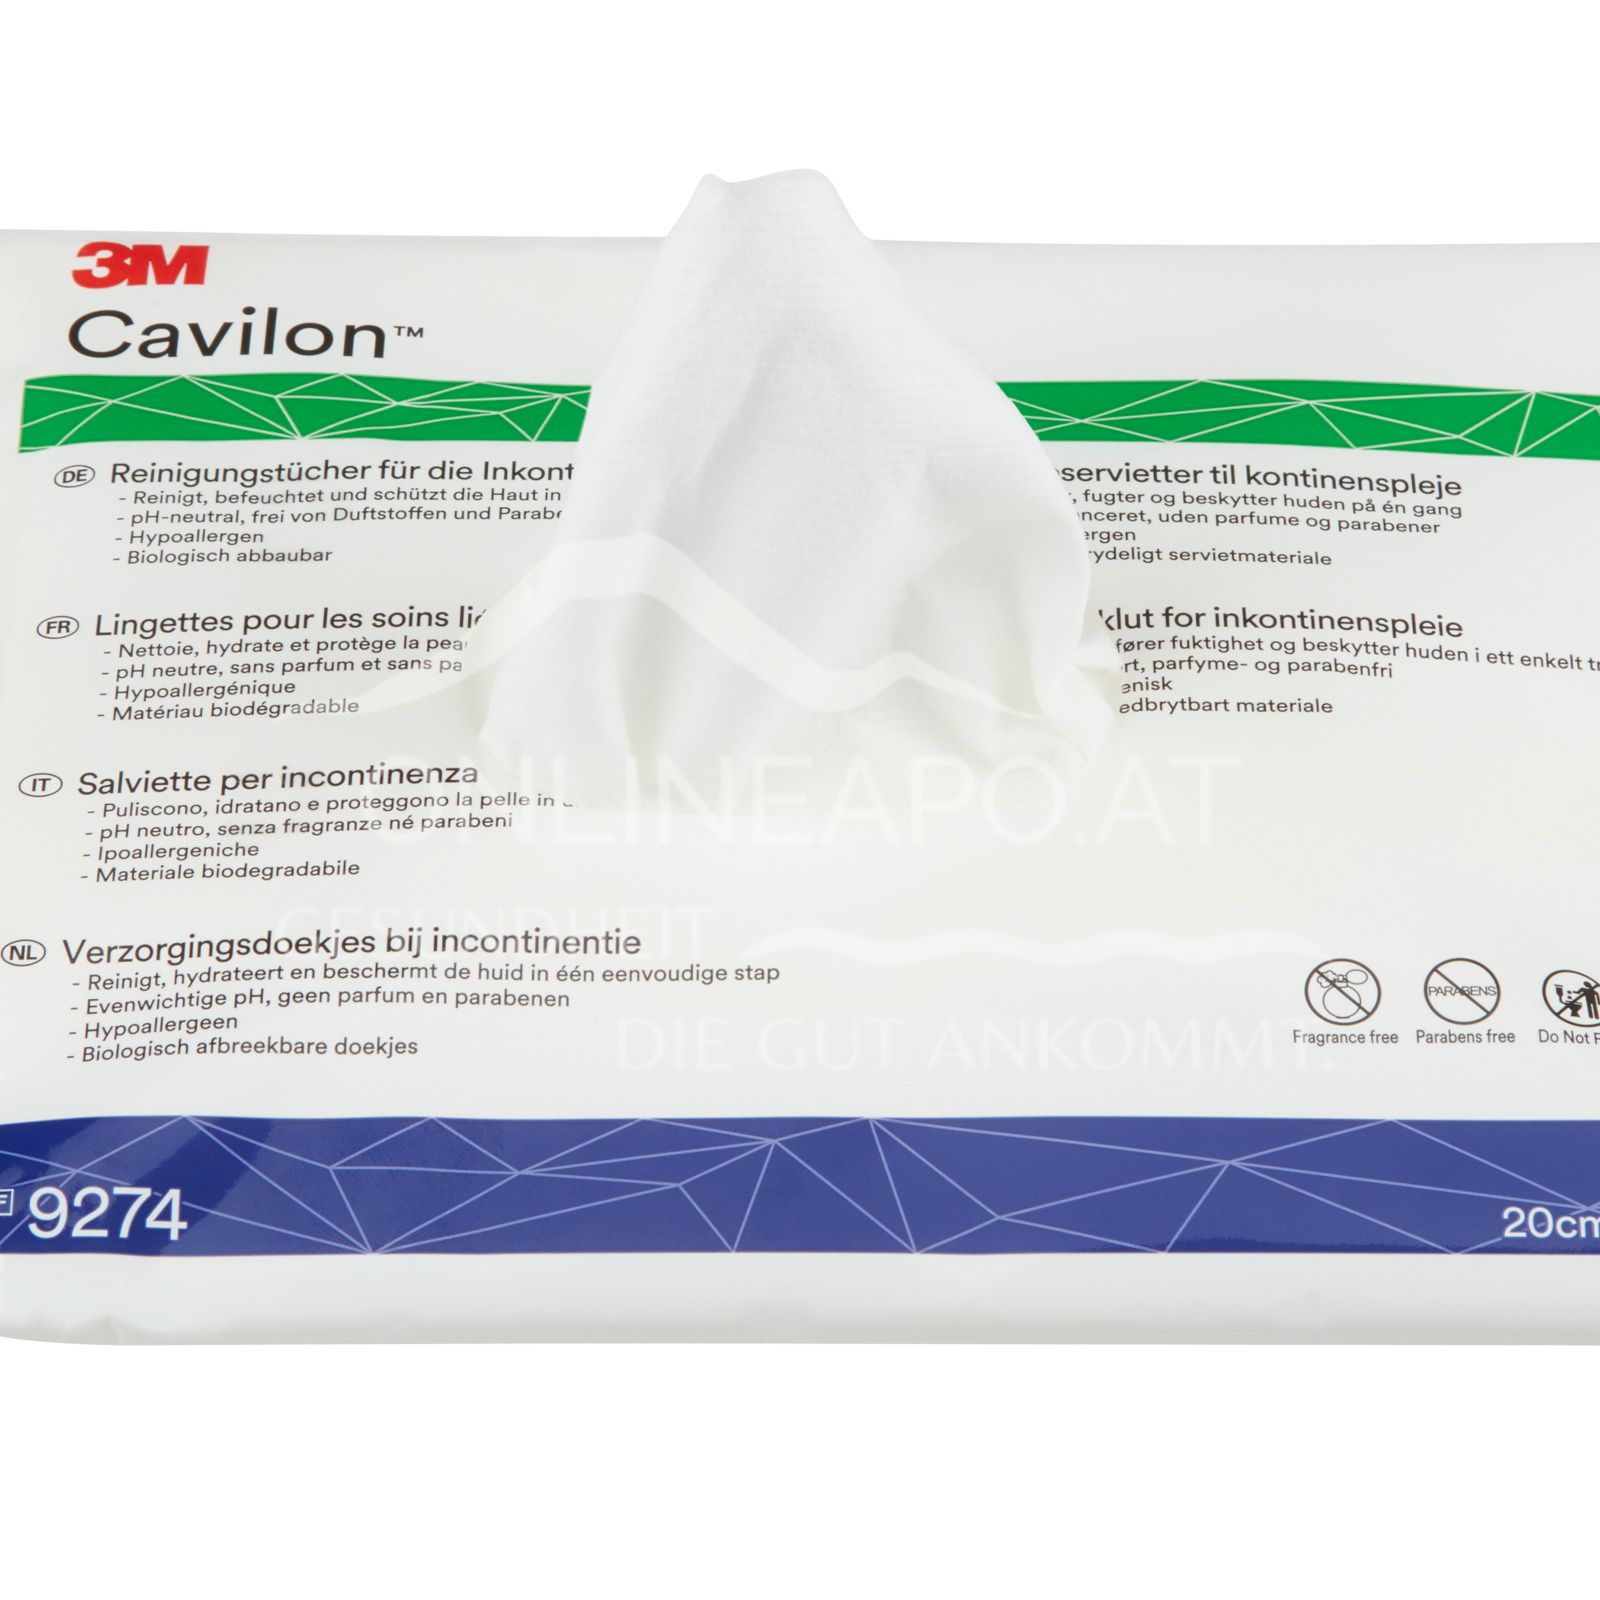 3M™ Cavilon™ Reinigungstücher für die Inkontinenzpflege 20 x 30 cm